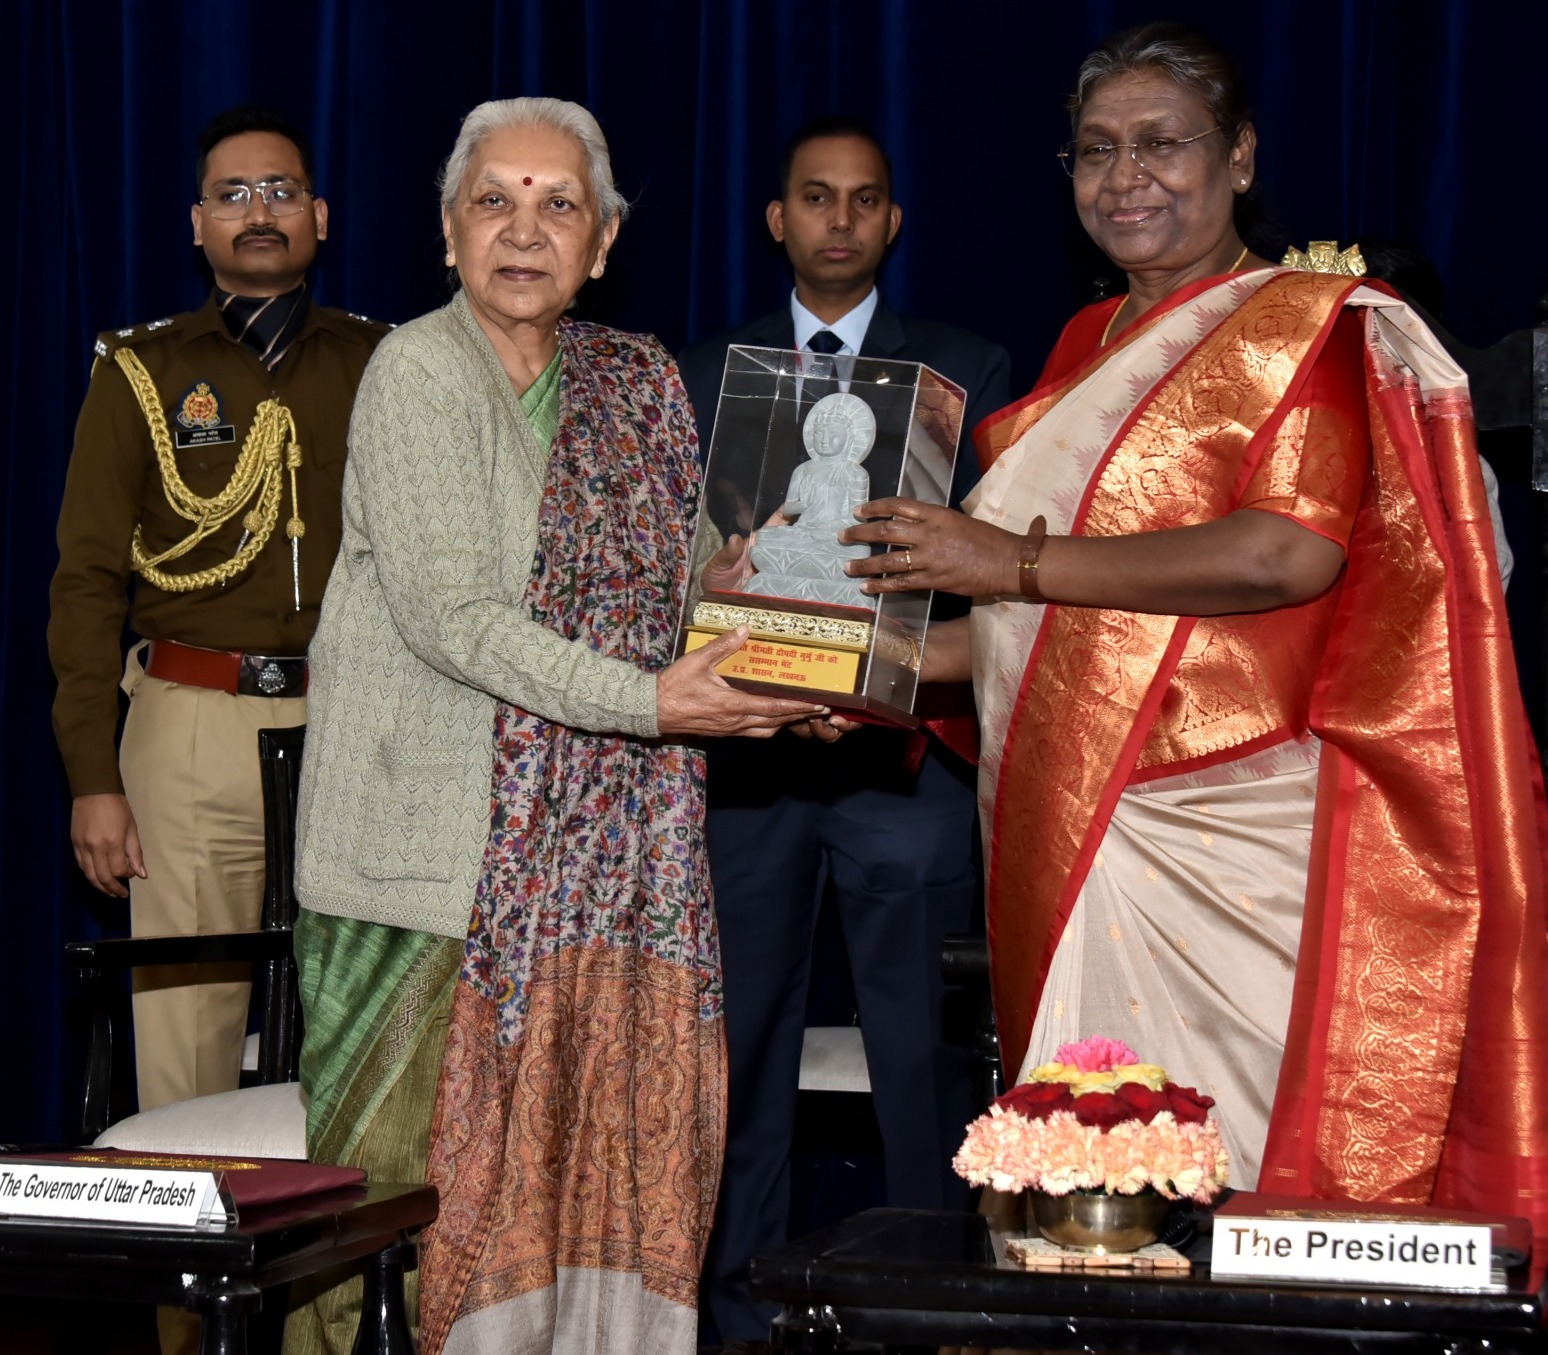 माननीय राष्ट्रपति श्रीमती द्रौपदी मुर्मू ने राजभवन में जनजातीय समूह प्रतिनिधियों को दिए वनाधिकार प्रपत्र